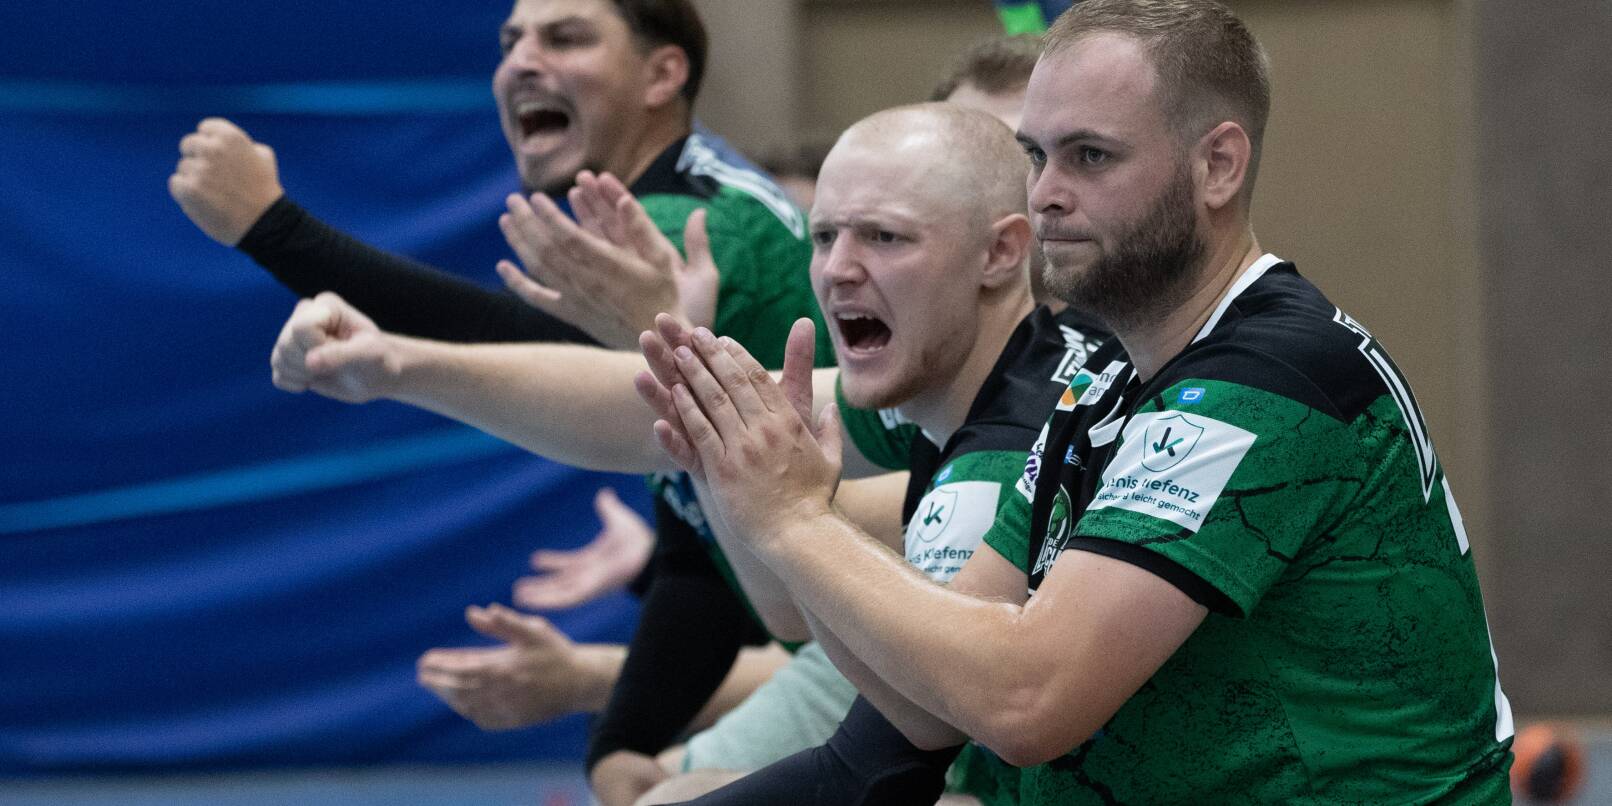 Die TG Laudenbach hat derzeit allen Grund für Jubel: Zum Saisonstart der handball-Landesliga übernahmen die Grün-Schwarzen die Tabellenführung.